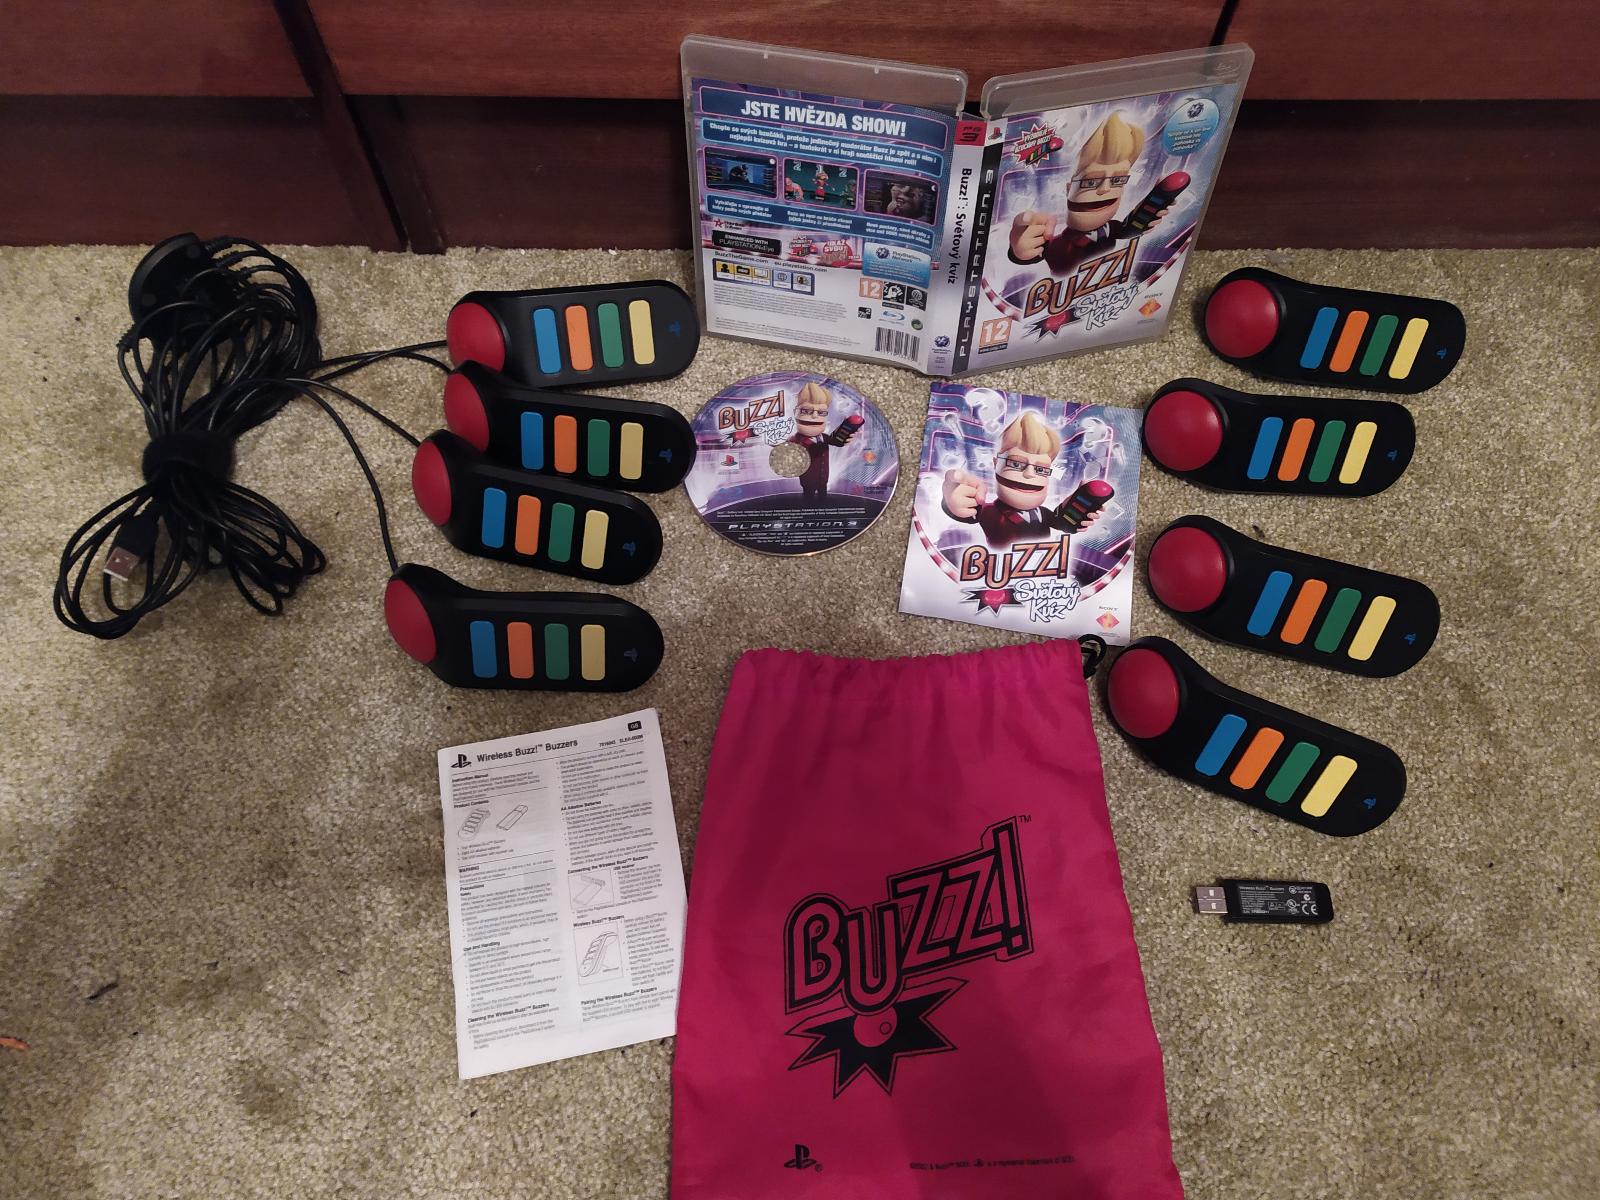 PS3 - Buzz! Světový kvíz + Buzzers wireless CZ